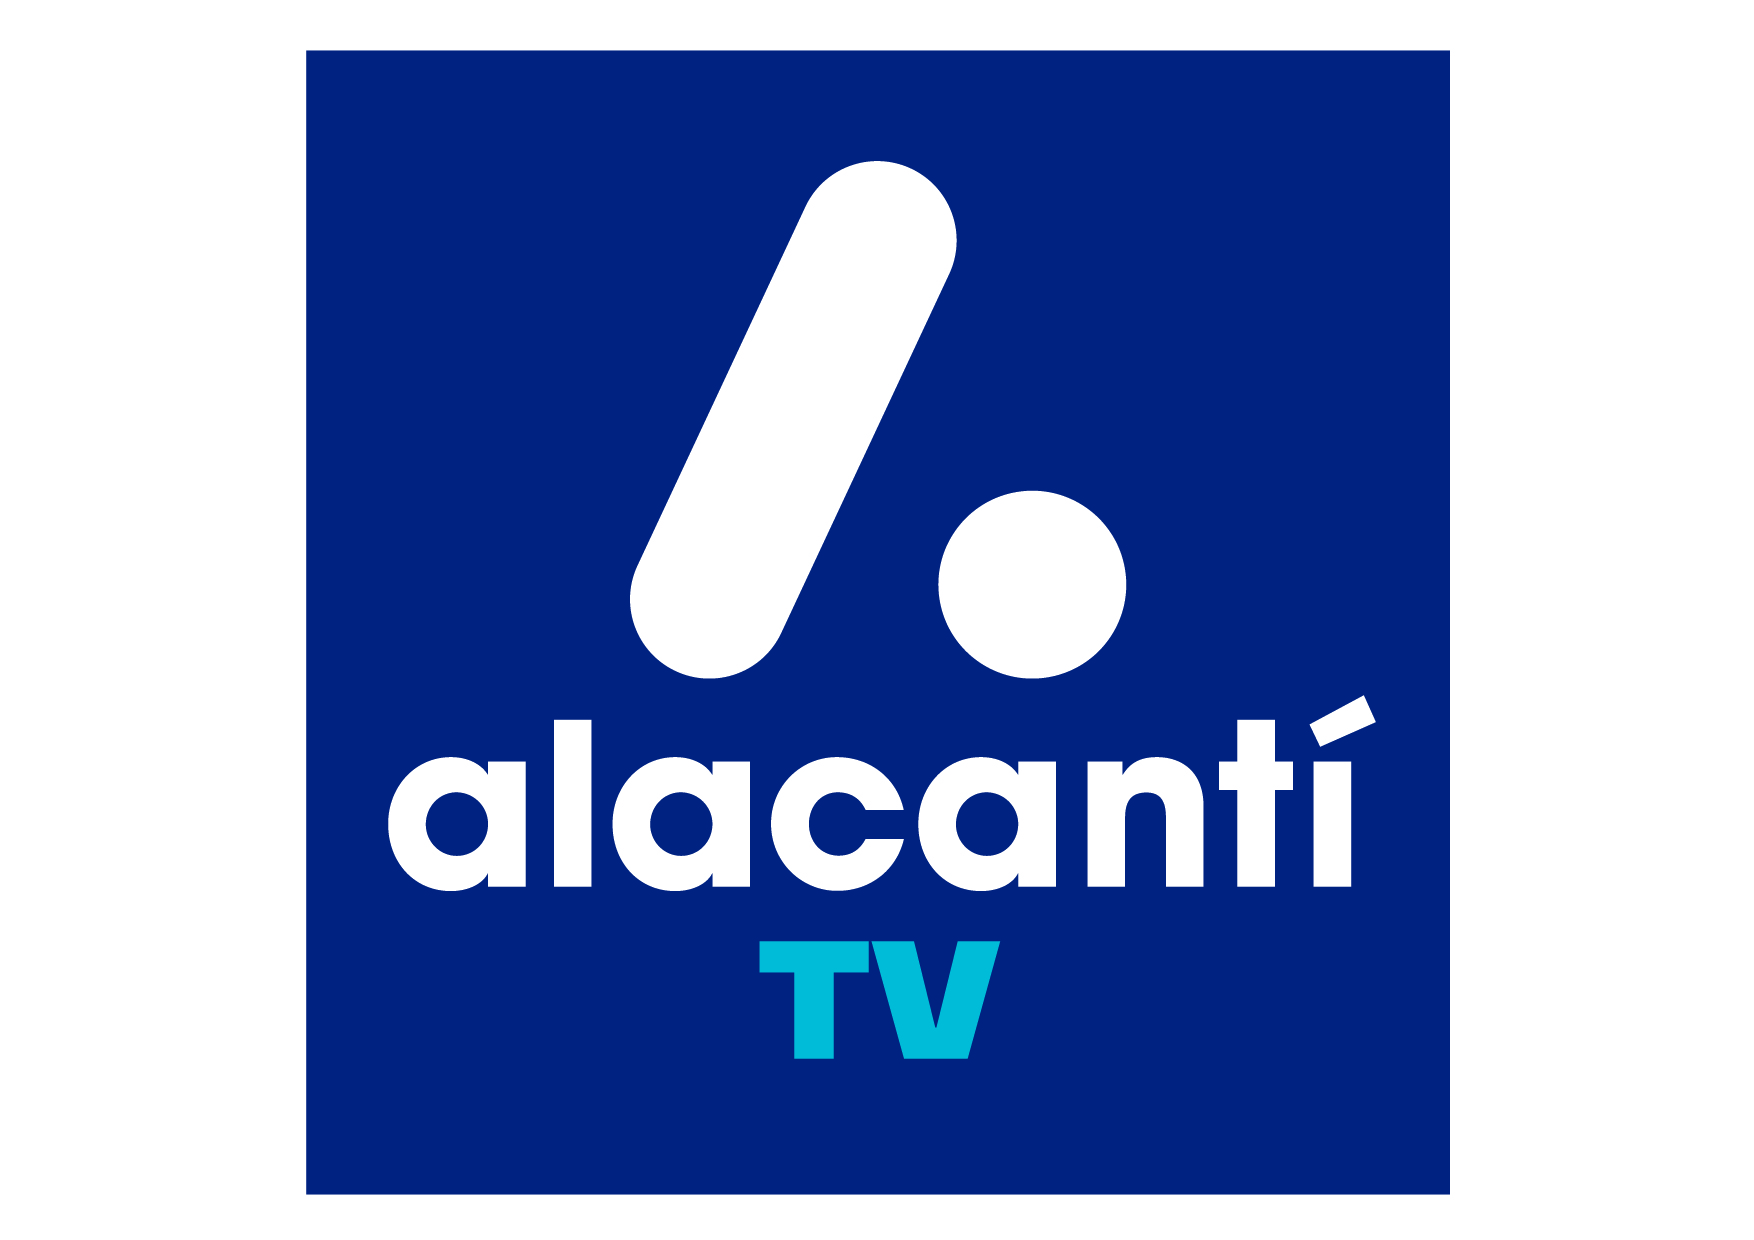 ALICANTI TV